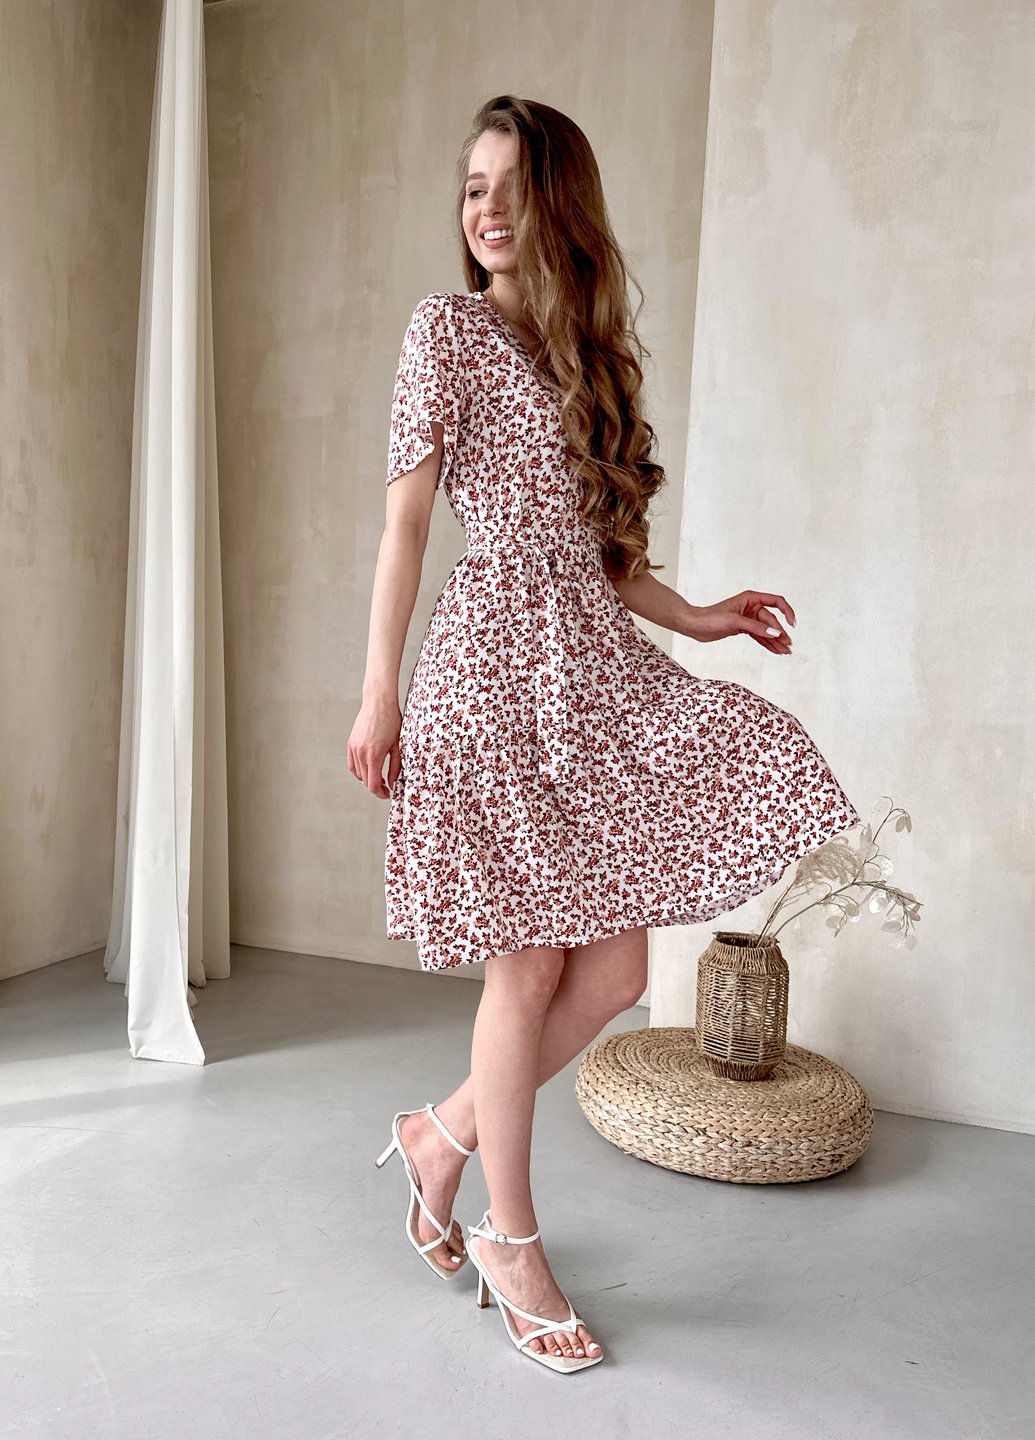 Купить Женское платье до колена с цветочным принтом и пояском белое Merlini Маренго 700000242, размер 46-48 (L-XL) в интернет-магазине